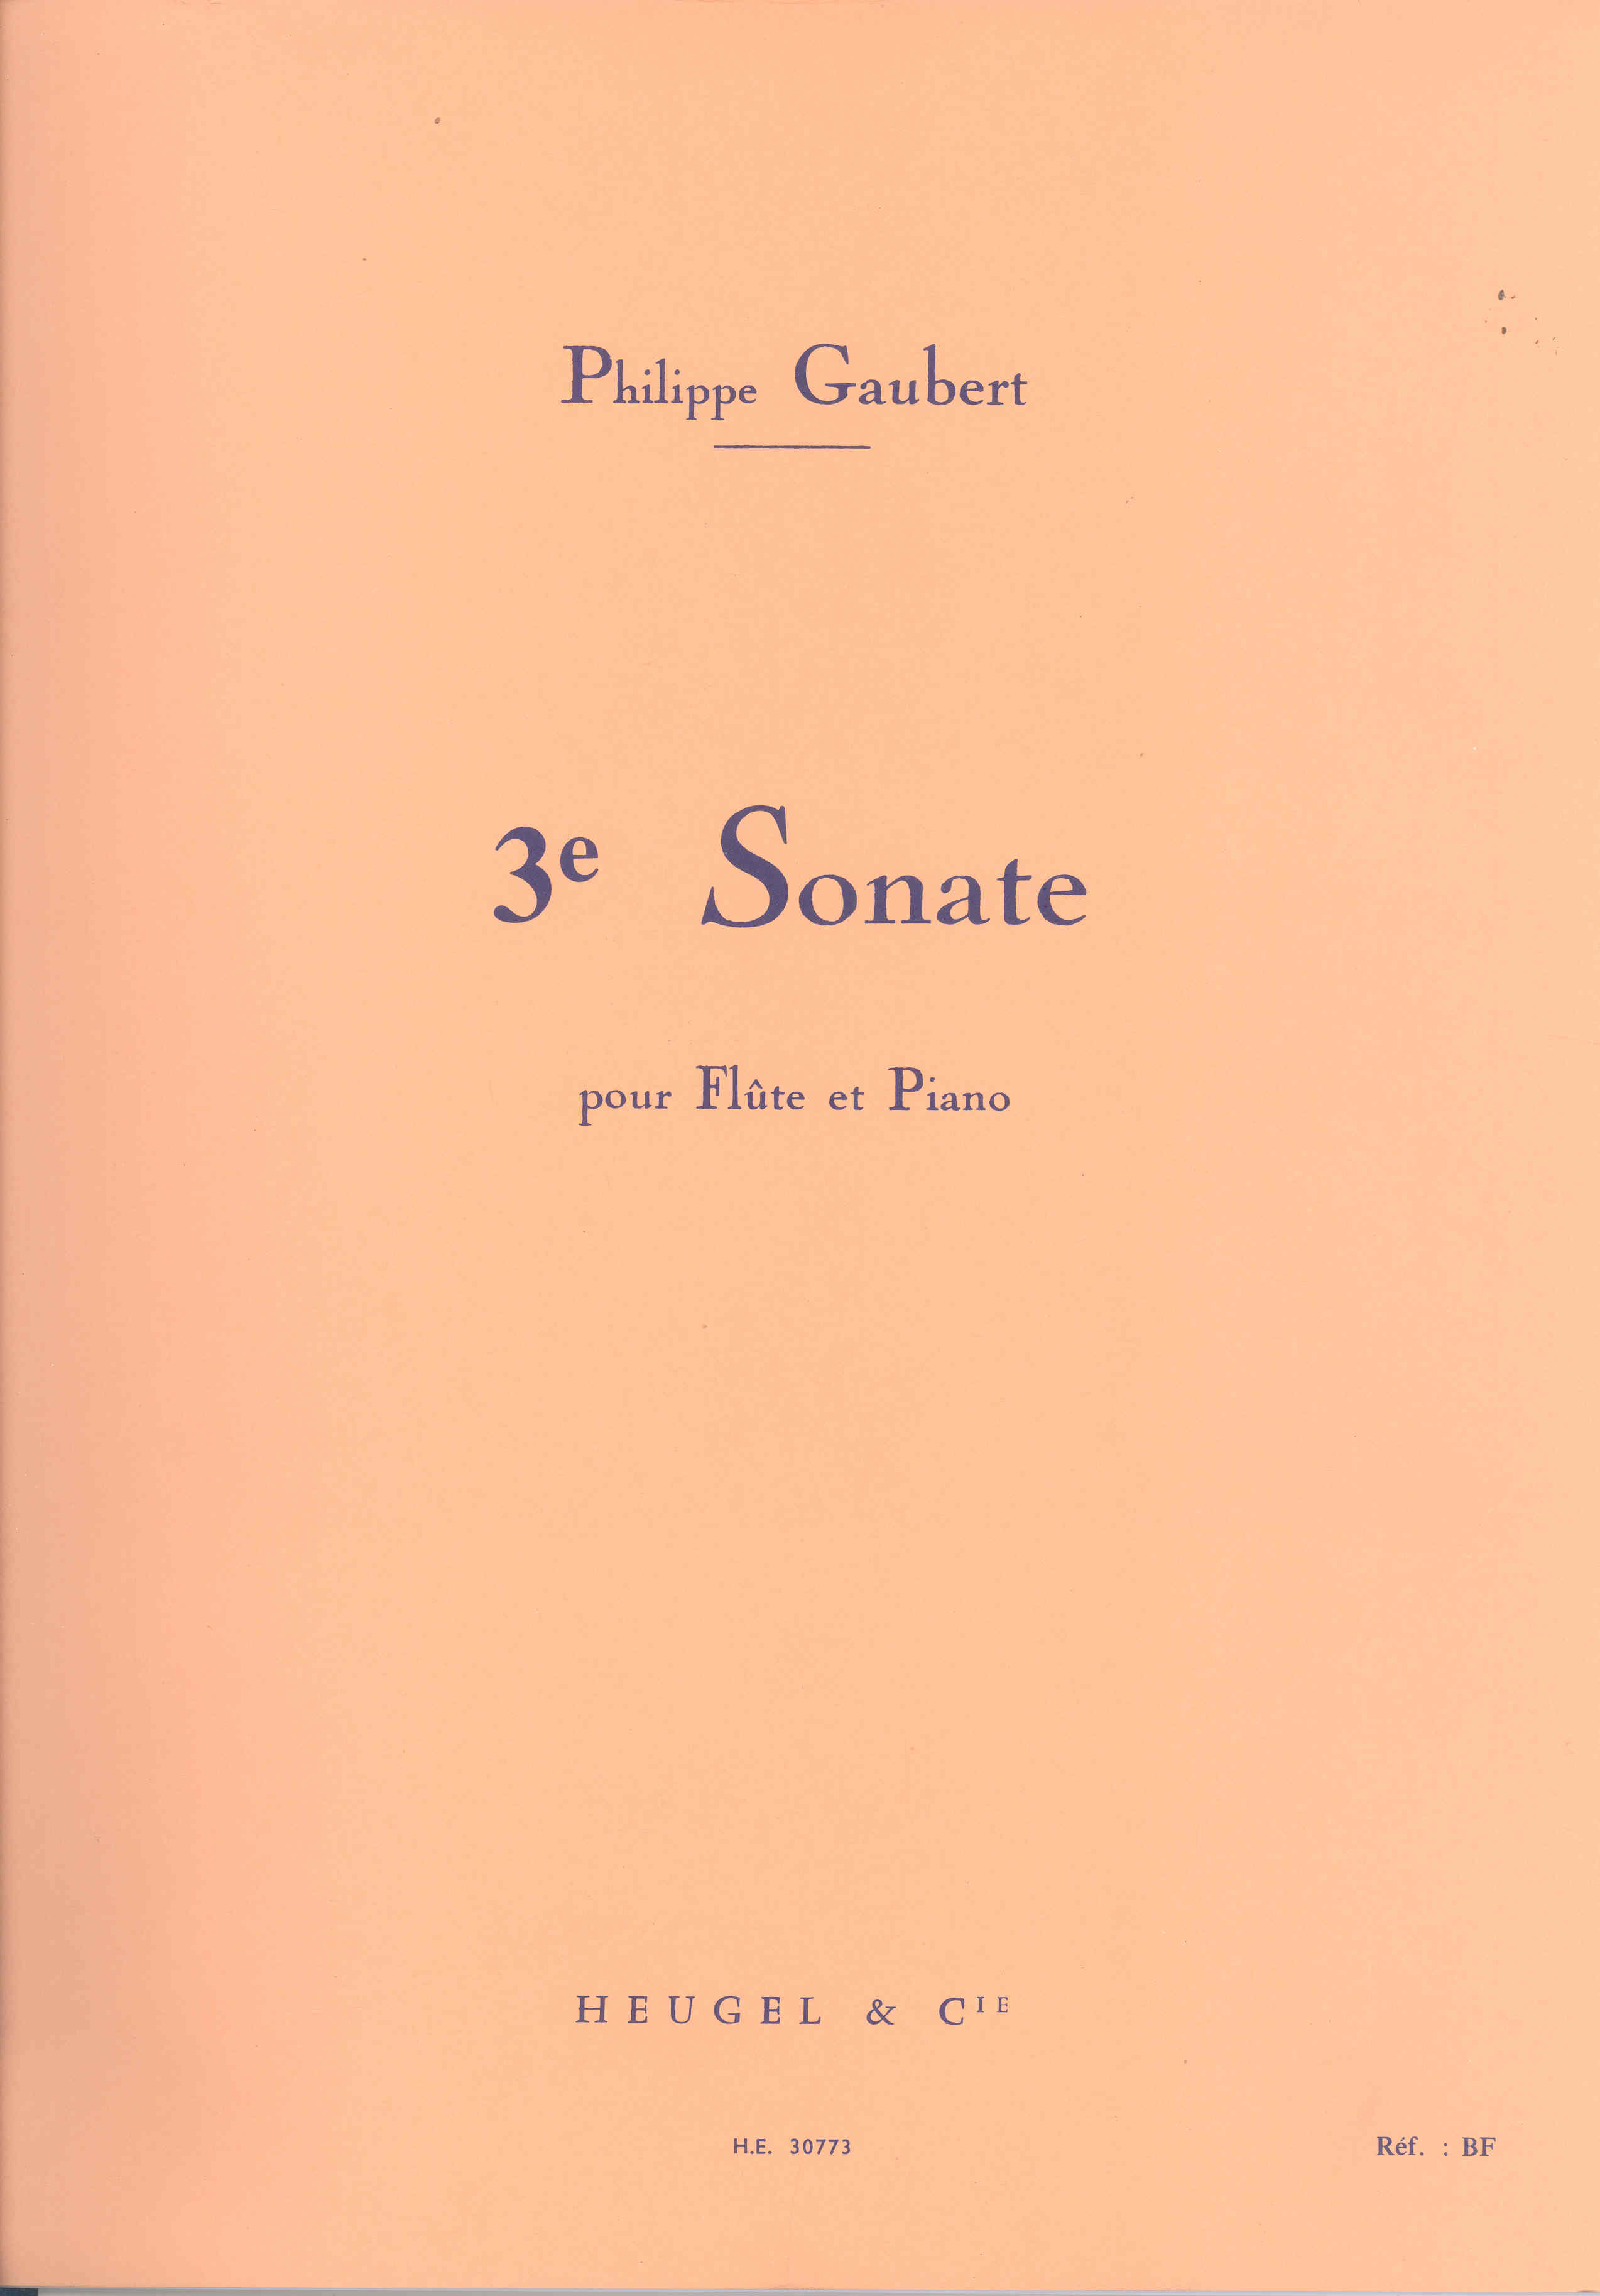 Gaubert Sonata No 3 Flute & Piano Sheet Music Songbook